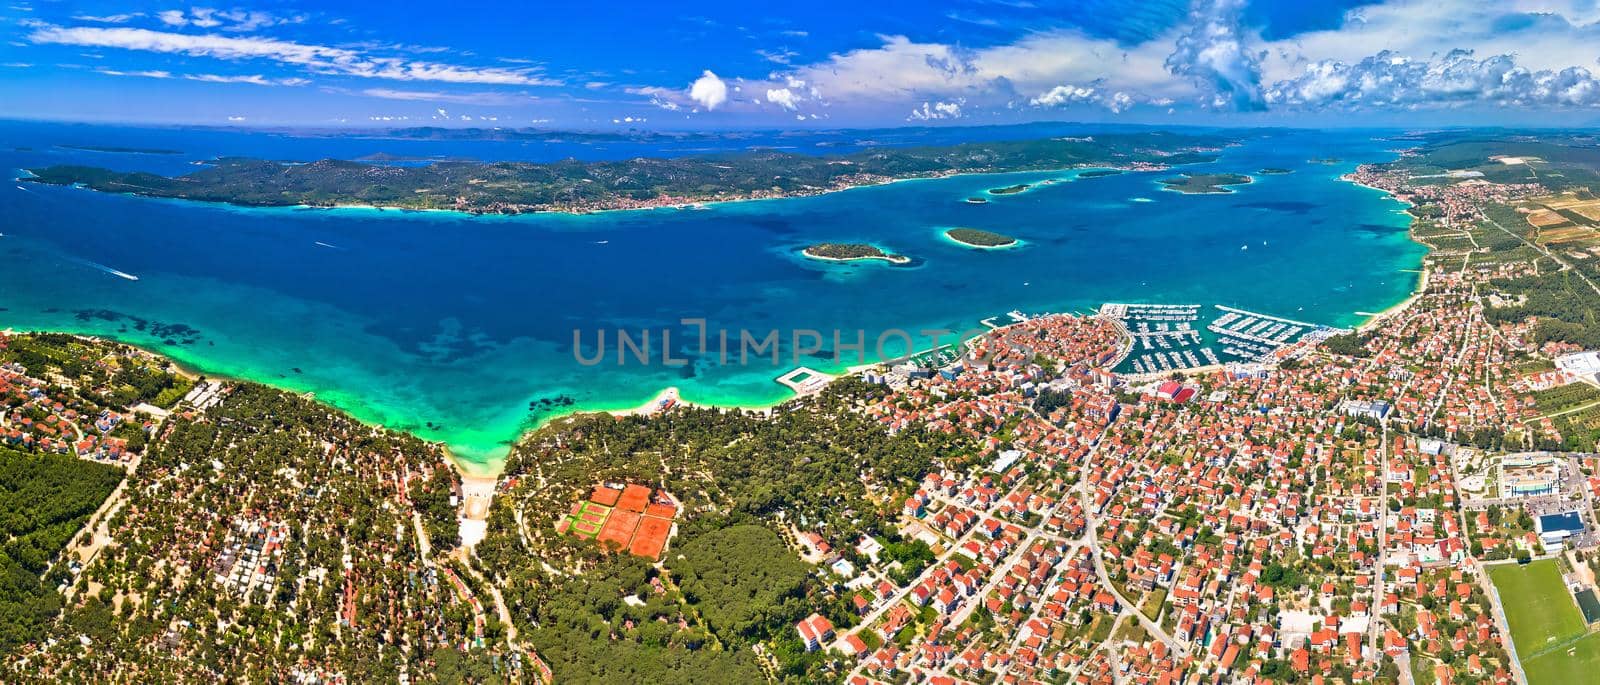 Biograd na Moru archipelago panoramic aerial view by xbrchx